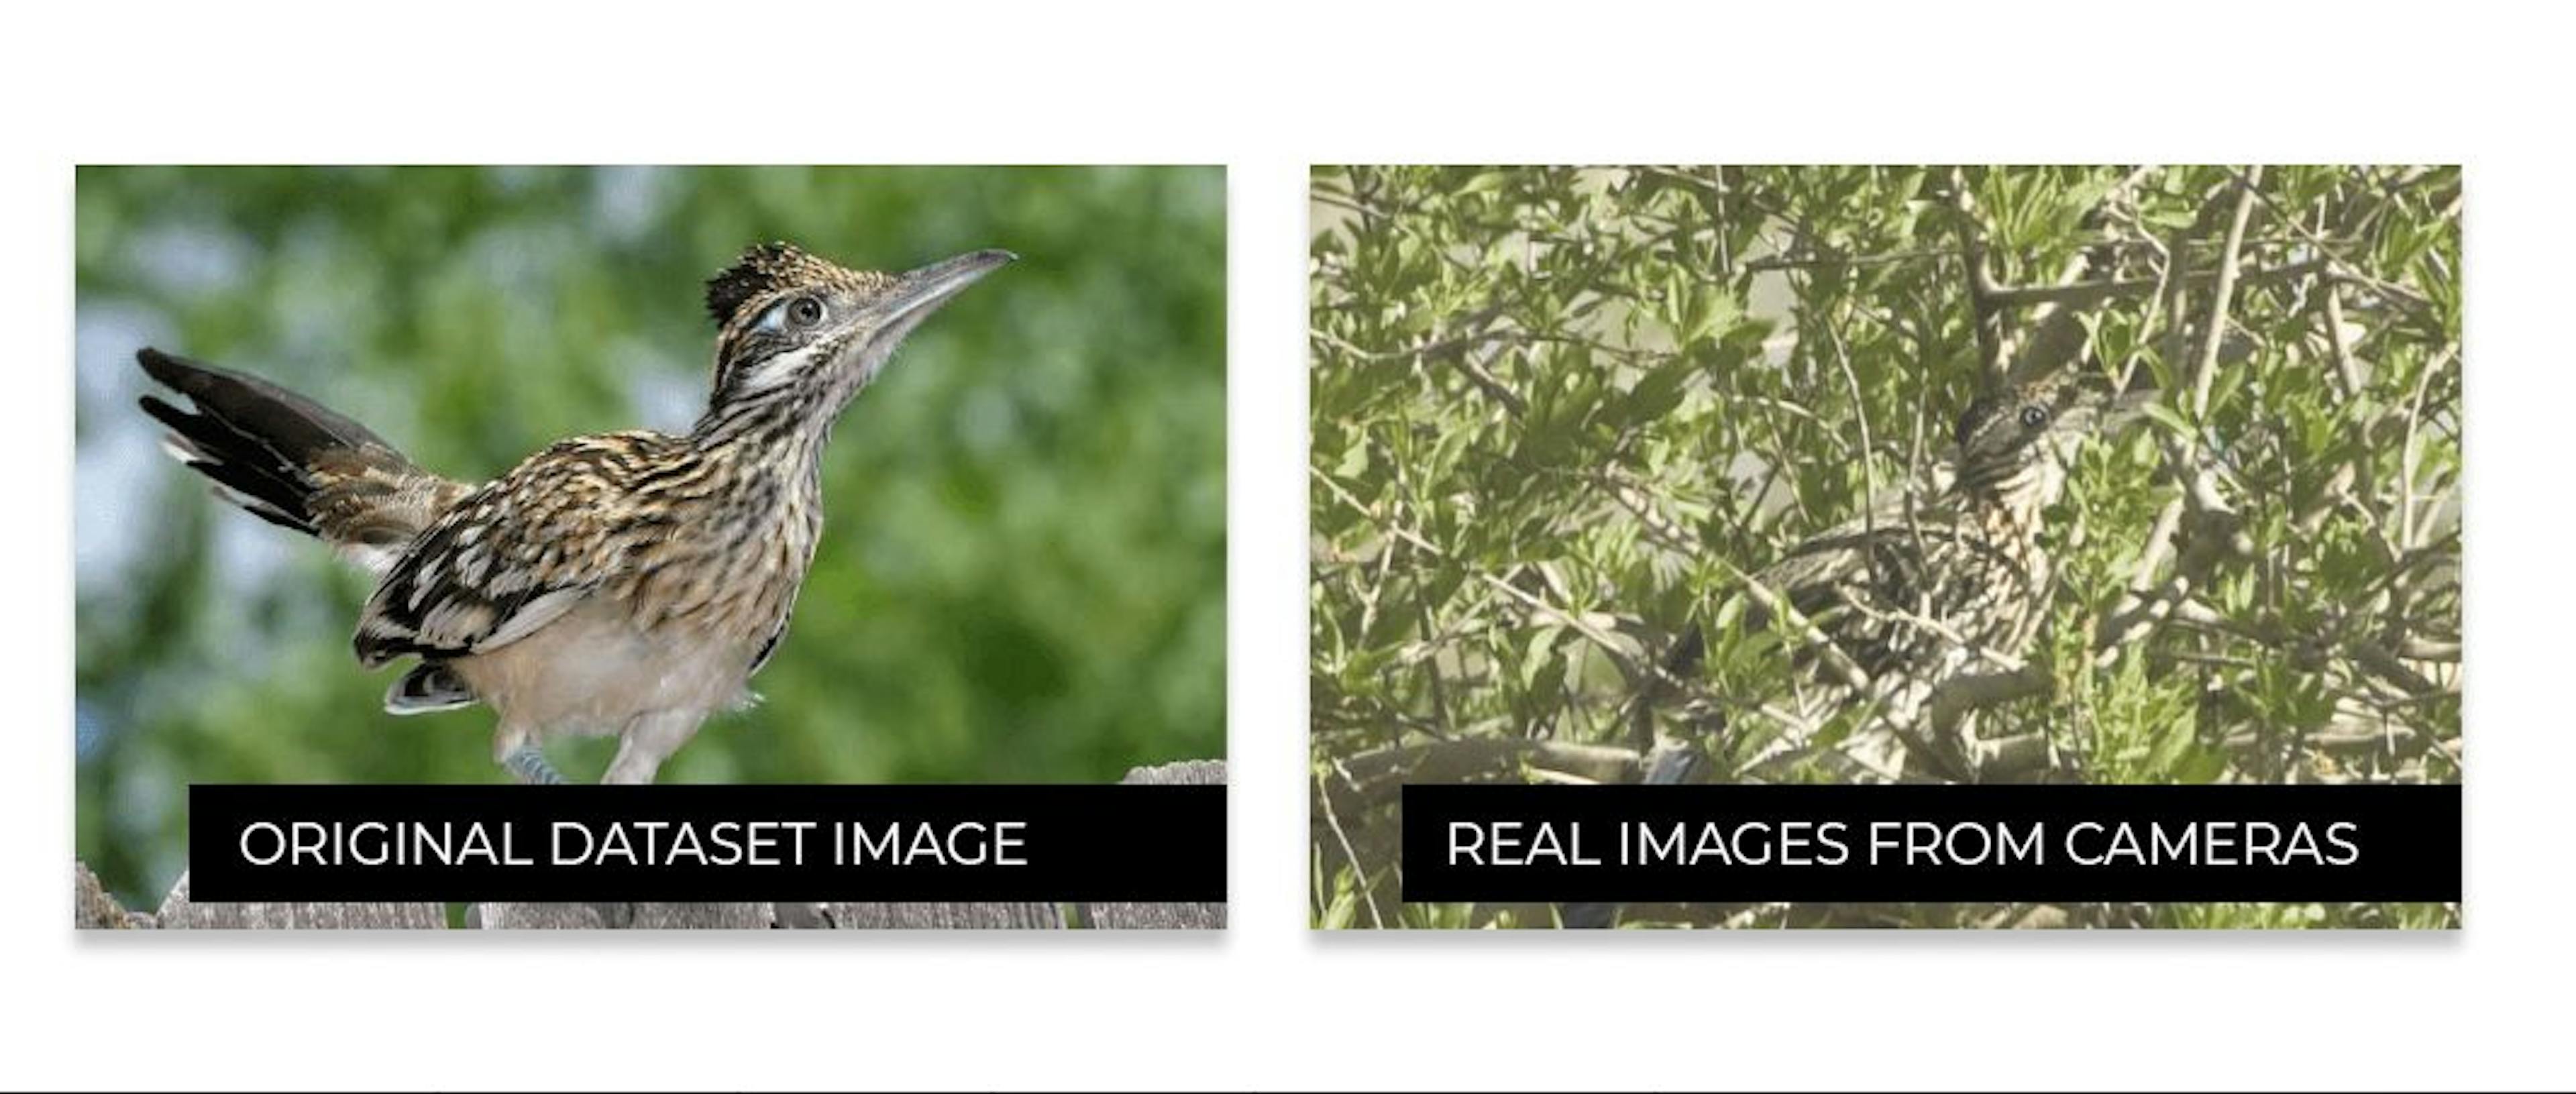 새들이 인터넷에서 보는 모습과 실제 환경에서 보이는 모습의 차이